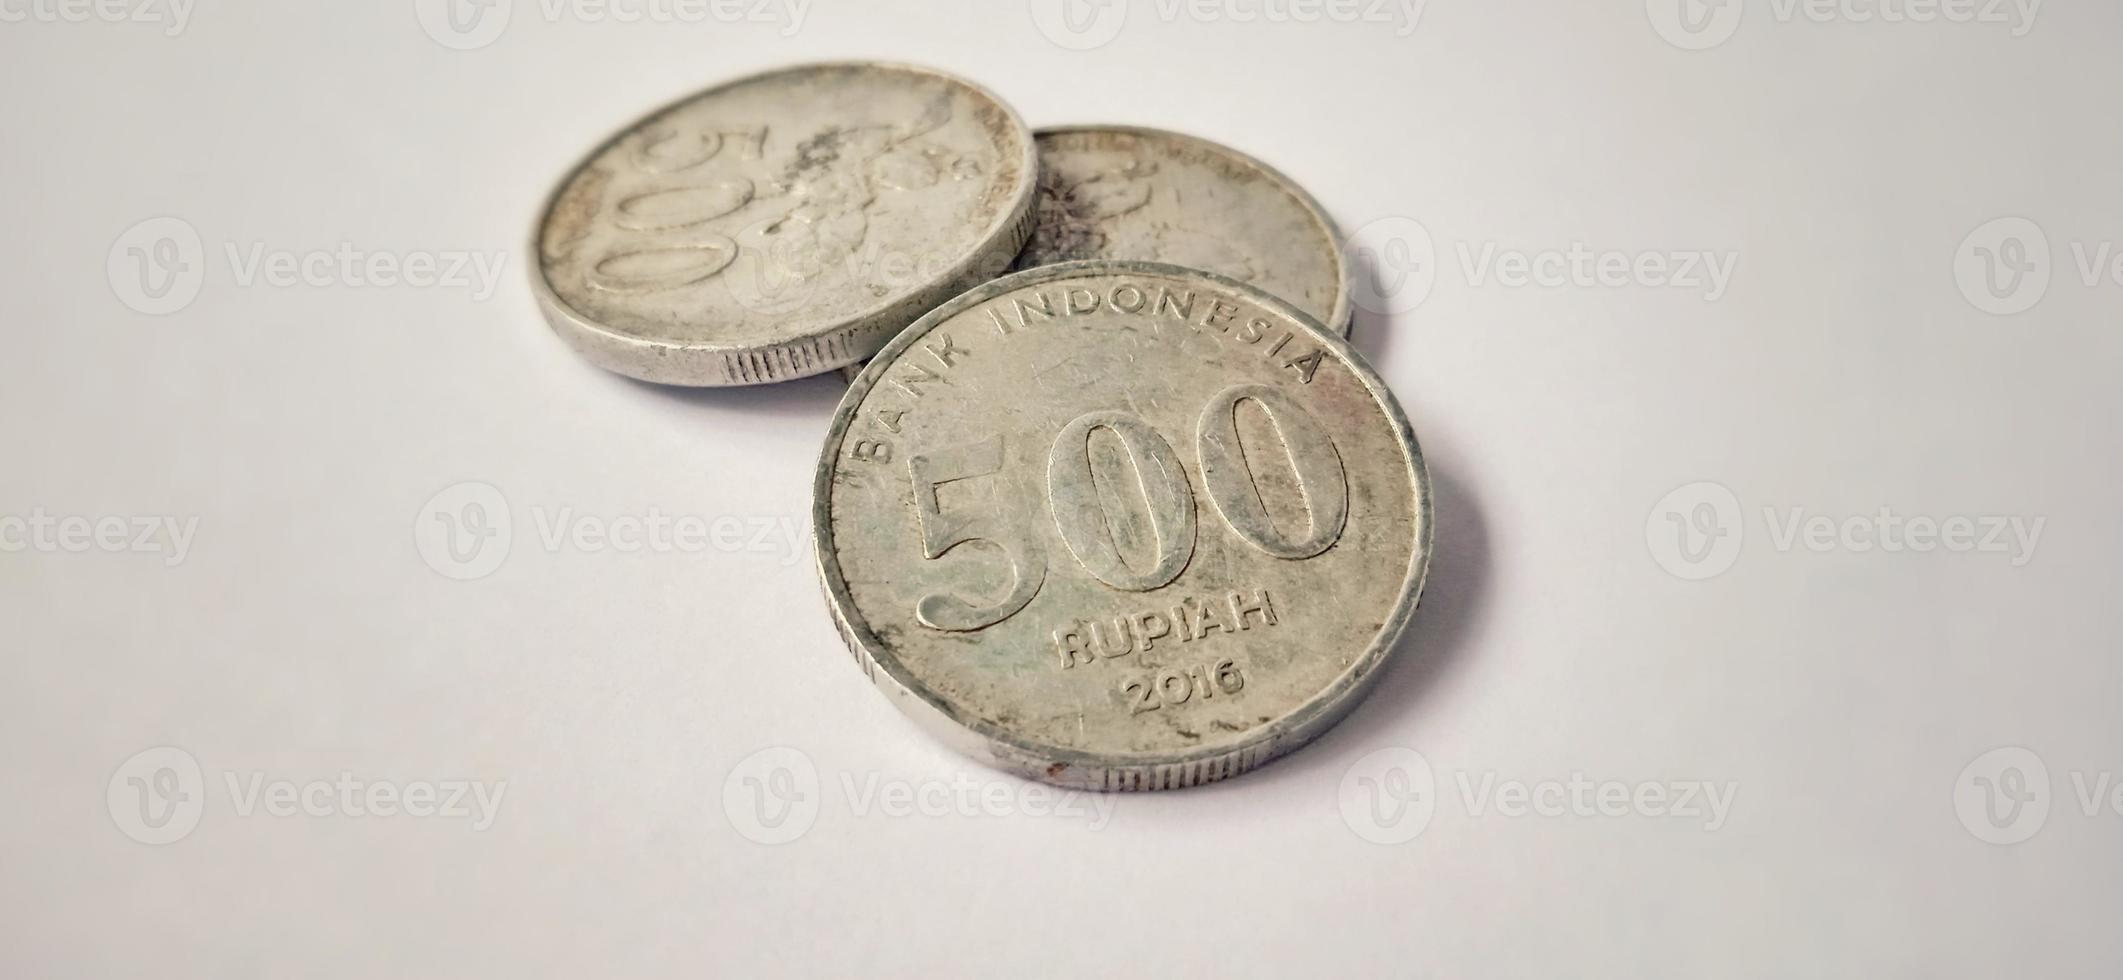 twee kanten van oude 500 rupiah munt uit bank indonesië met een grijze achtergrond. gemaakt van jaar is 2016. Indonesische rupiah, 500 rupiah, Indonesische valuta, Indonesische geldachtergrond. foto